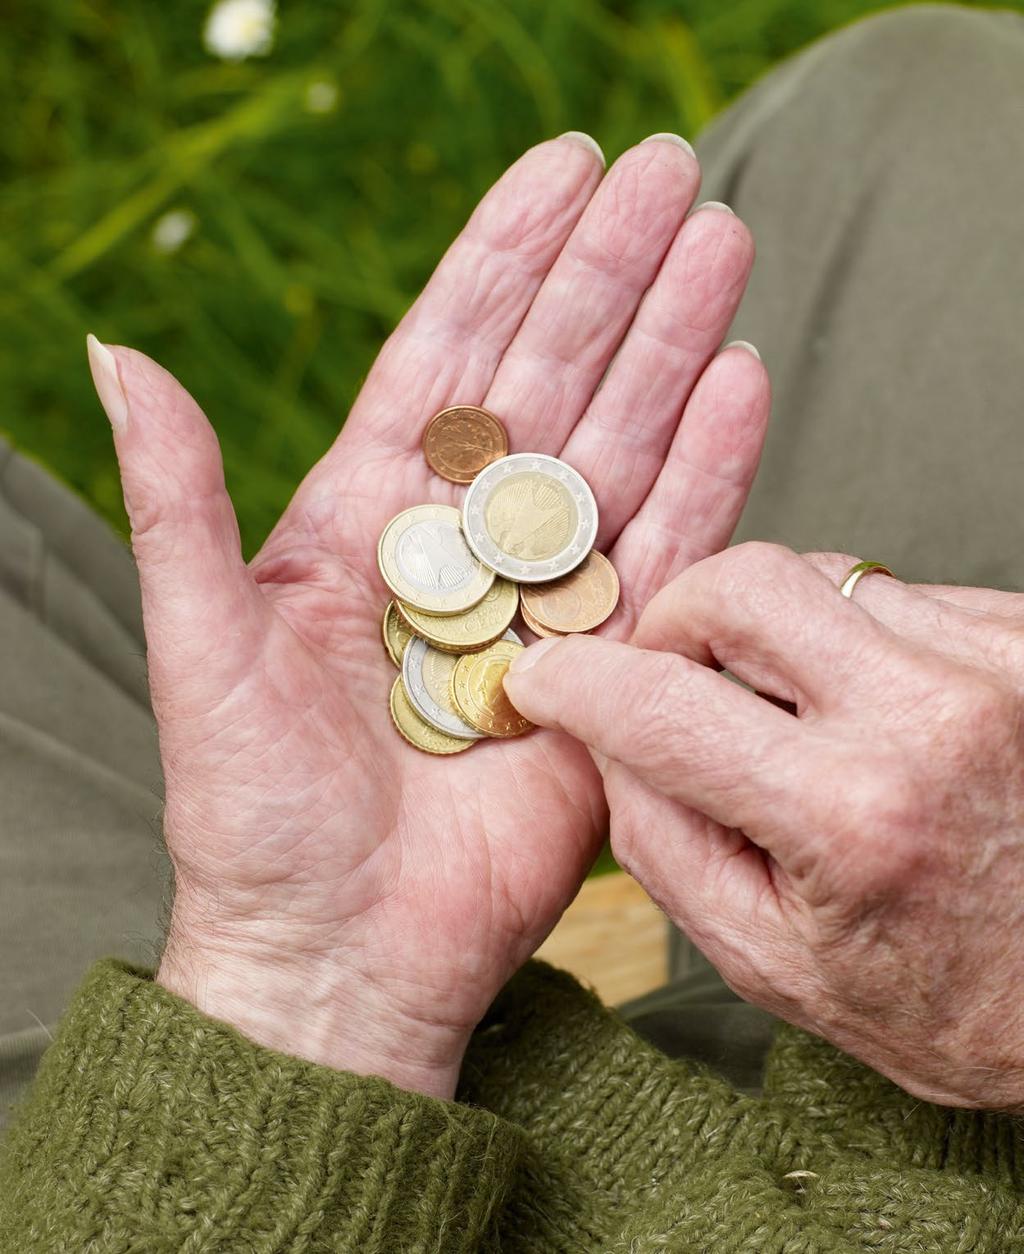 GUT ABGESICHERT Im Alter arm zu sein, ist für manche Menschen eine große Sorge und für viele ein reales Risiko. Das heutige Rentenniveau sollte darum nicht weiter absinken.